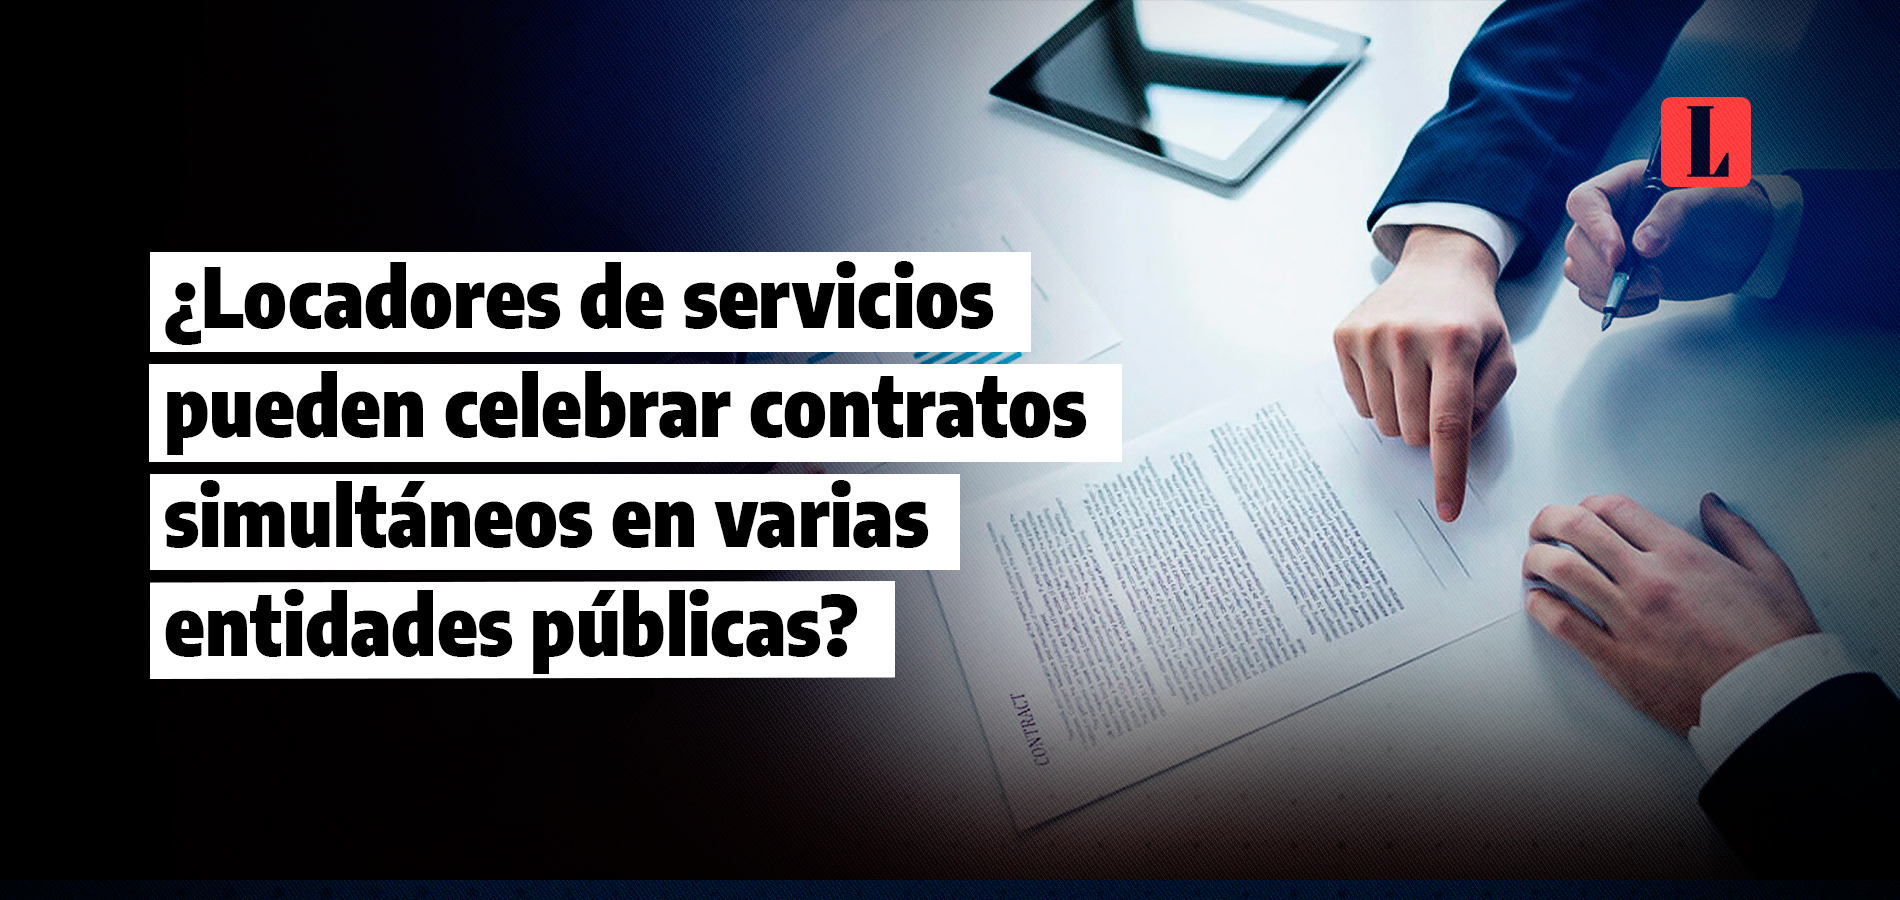 ¿Locadores de servicios pueden celebrar contratos simultáneos en varias entidades públicas?